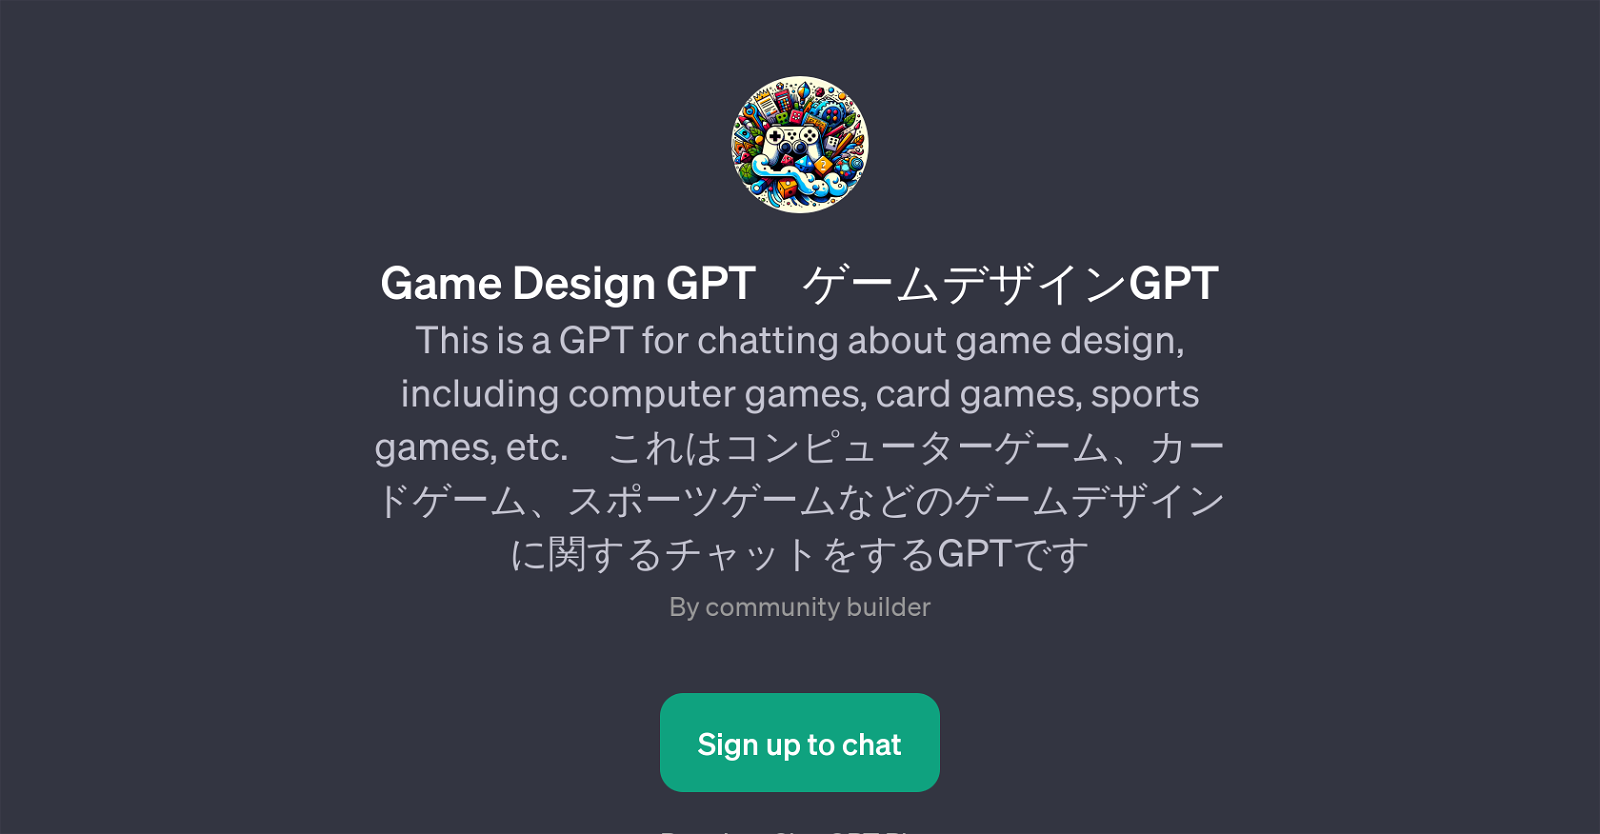 Game Design GPT website